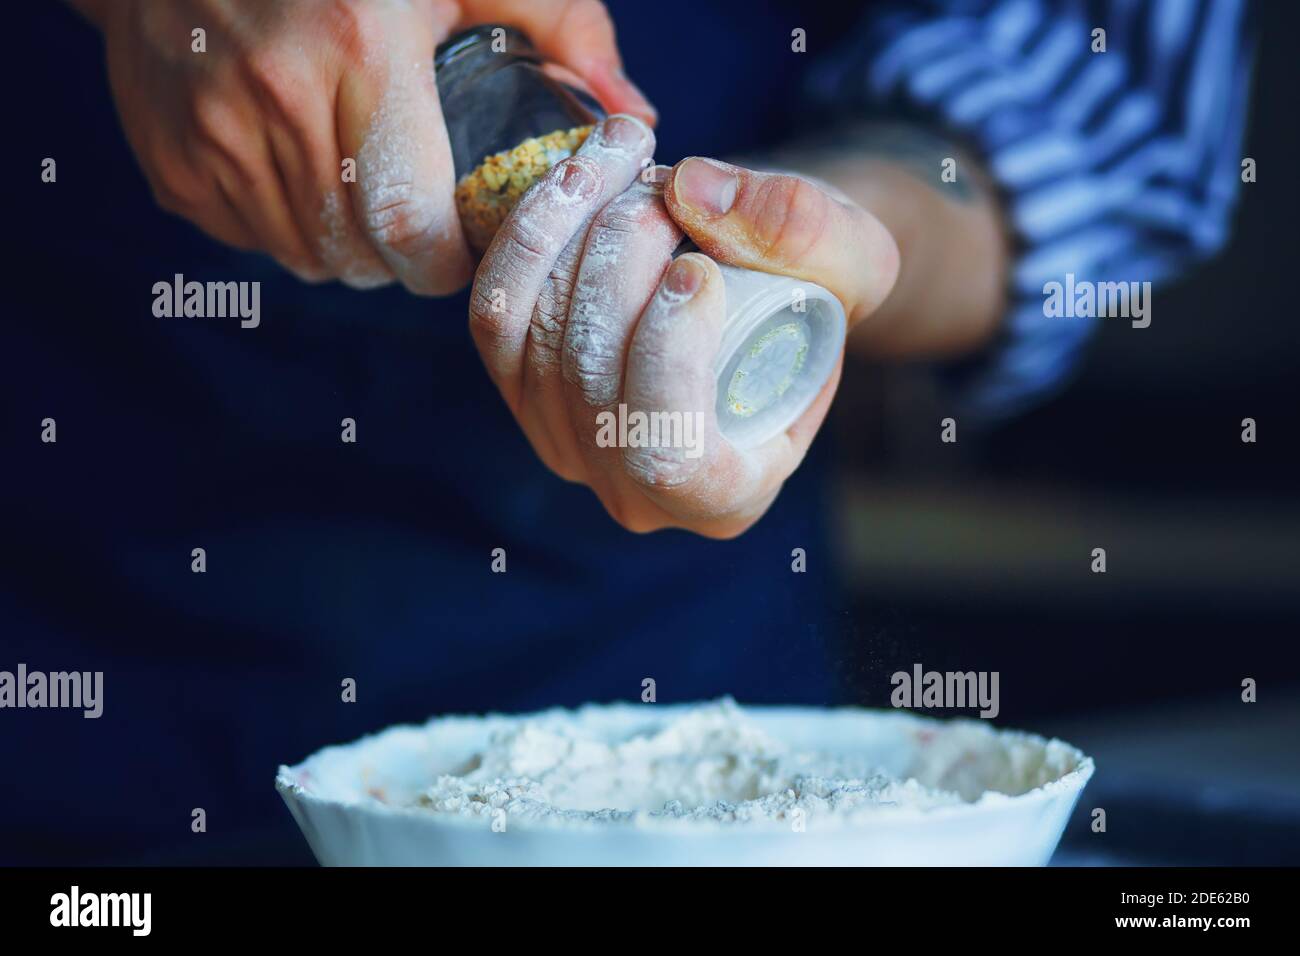 Uno chef in grembiule blu e camicia a righe tiene un bicchiere di sale shaker con condimento e lo versa in una ciotola di farina per la futura cottura. Cucina casalinga. Foto Stock